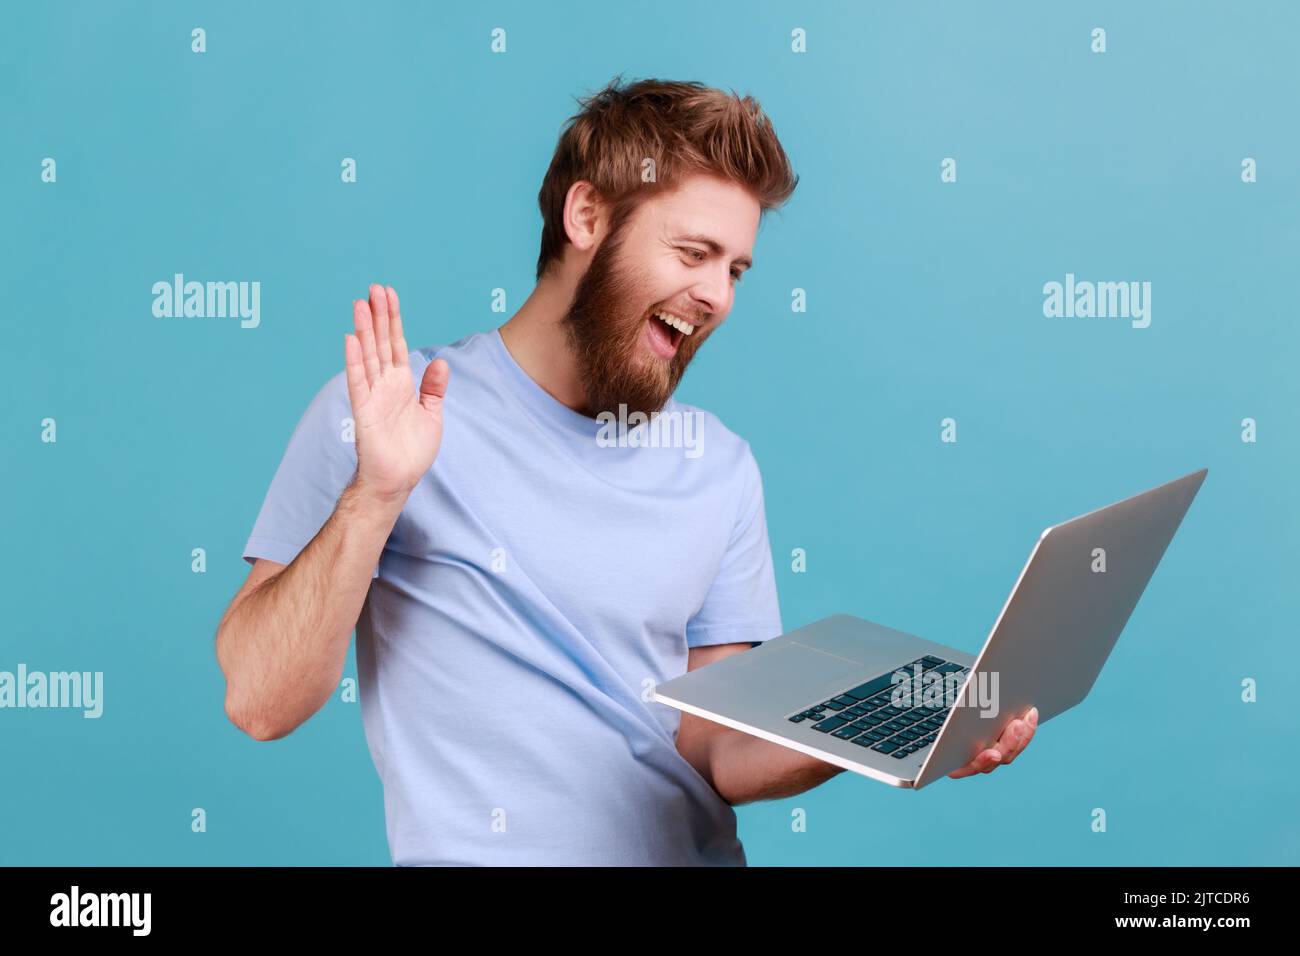 Ritratto di un uomo amichevole barbuto che saluta un lavoratore attraverso una webcam e mostra palmo del gesto della mano con un sorriso toothy, avendo conversazione in linea. Studio in interni isolato su sfondo blu. Foto Stock